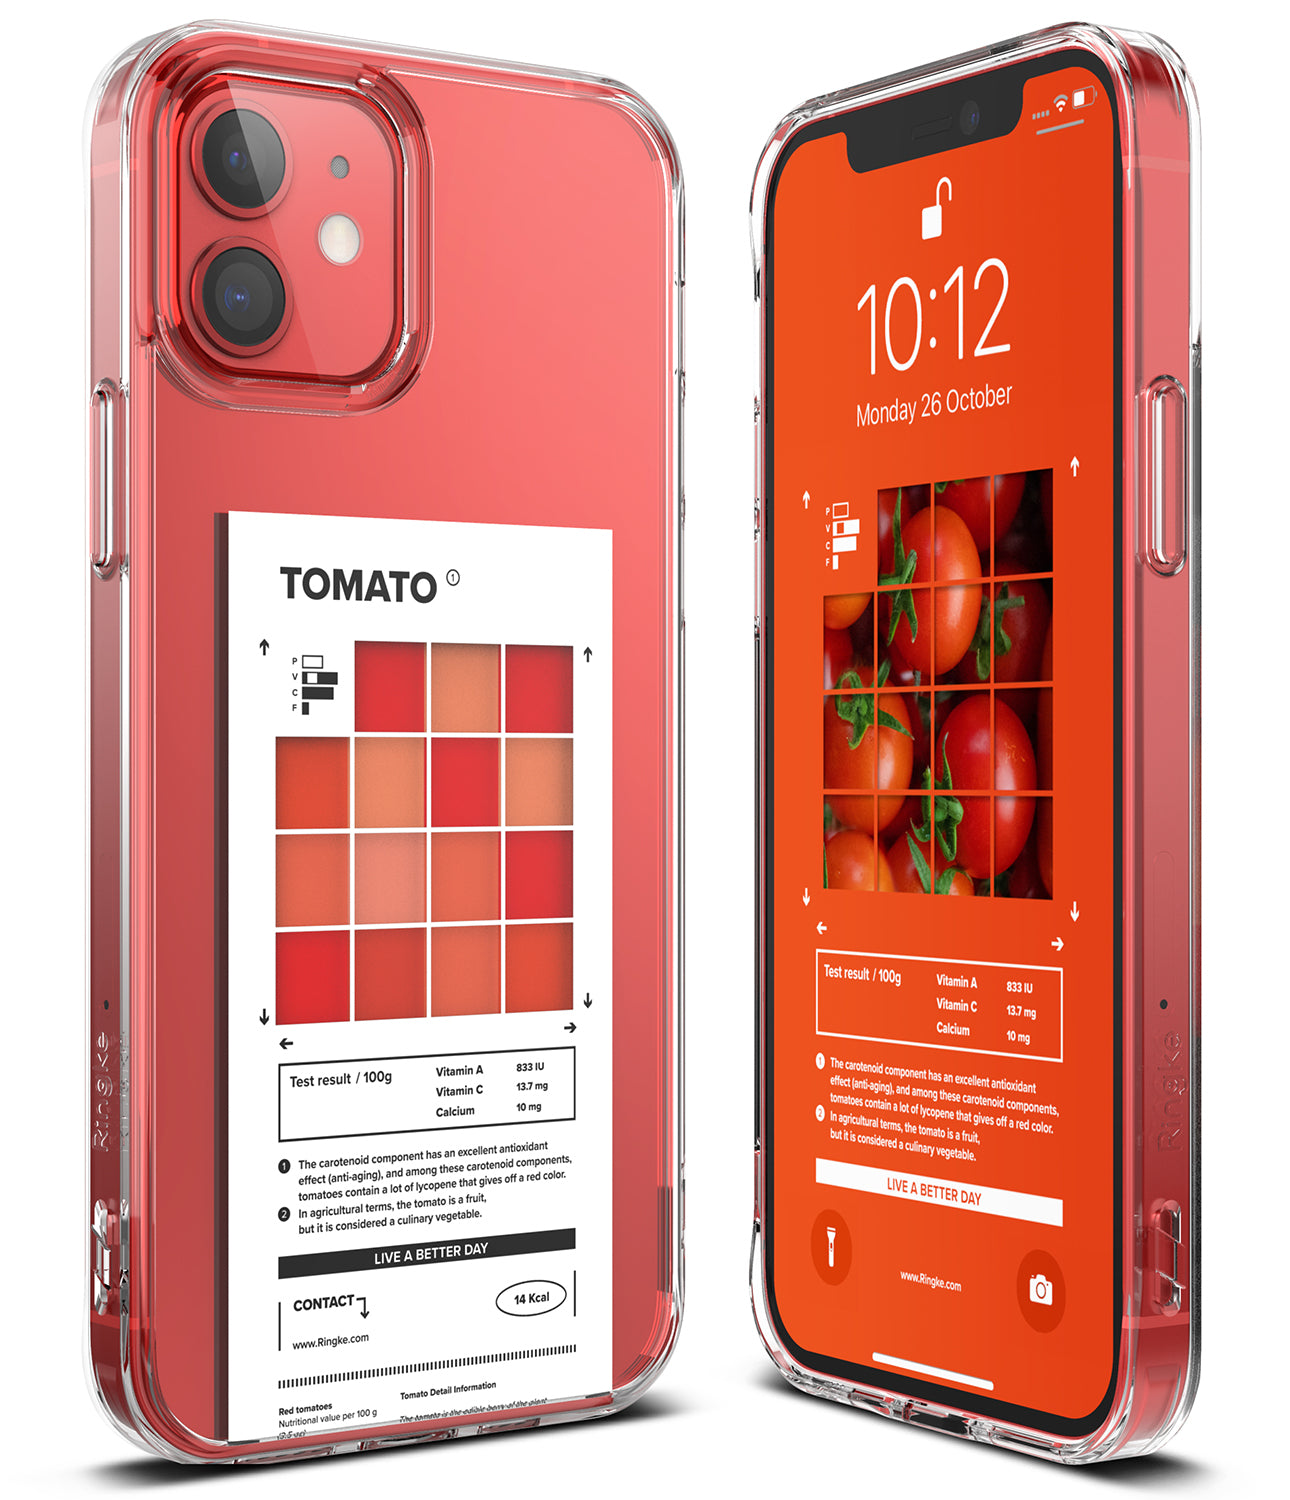 iPhone 12 / 12 Pro Case | Fusion Design Palette